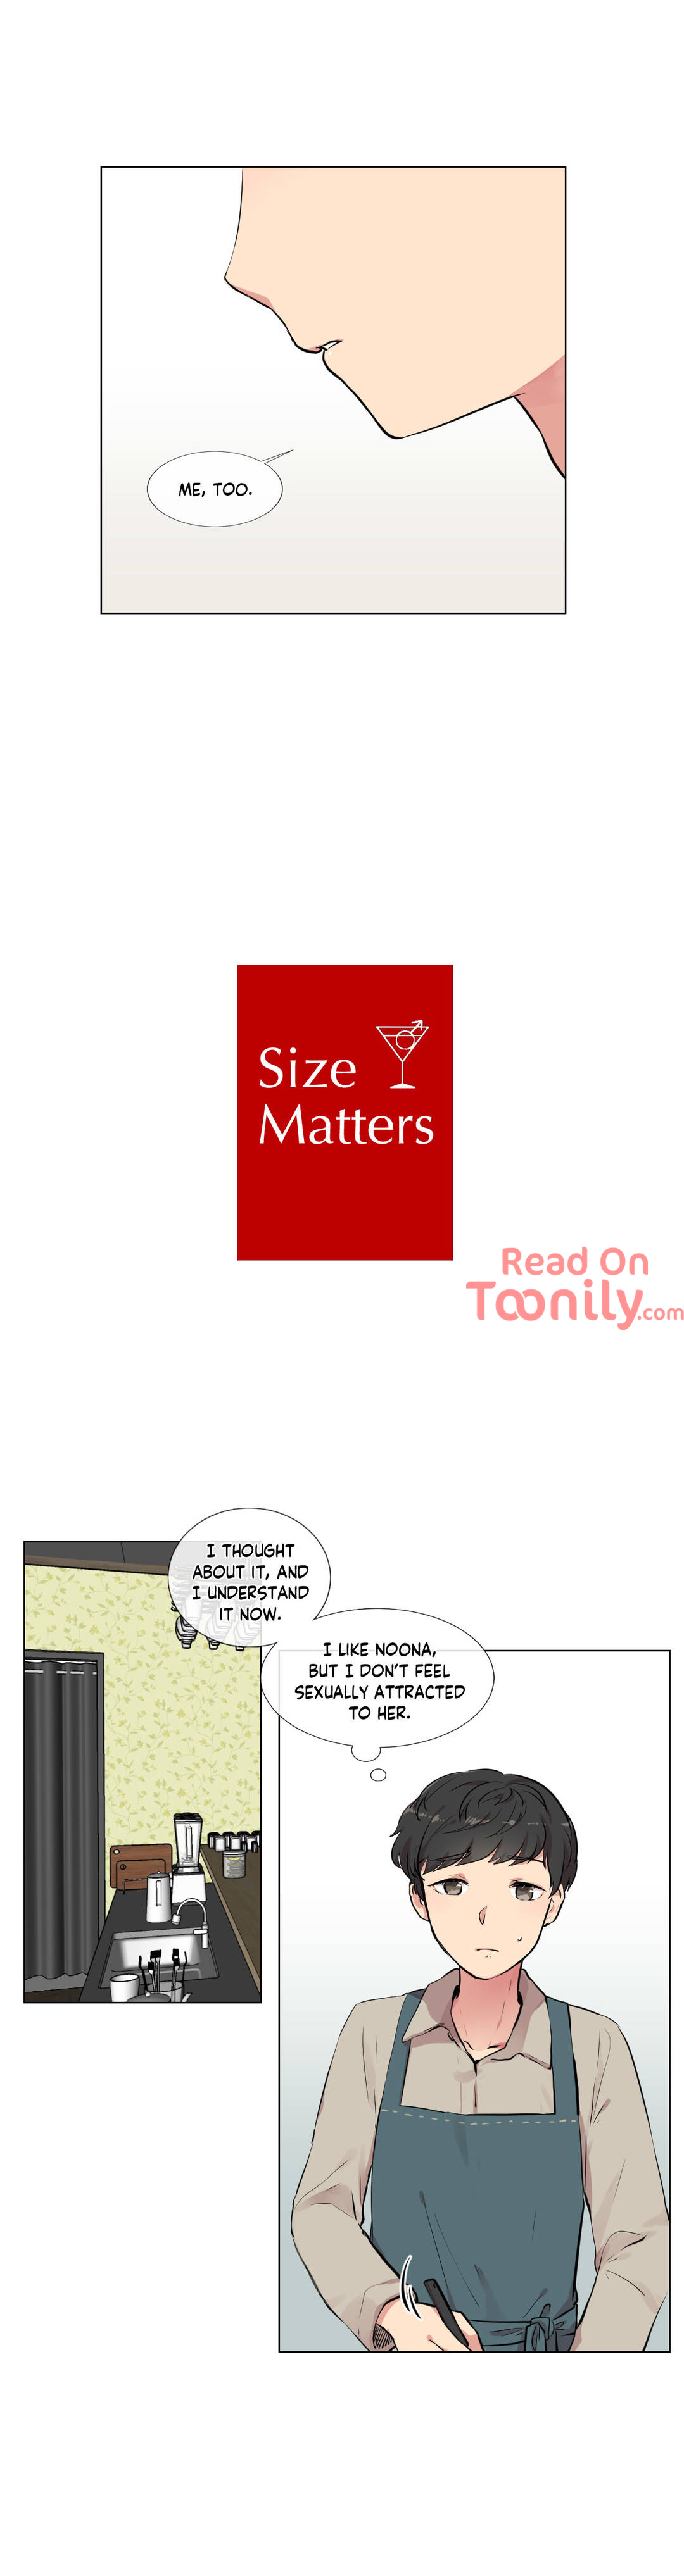 Size Matters image